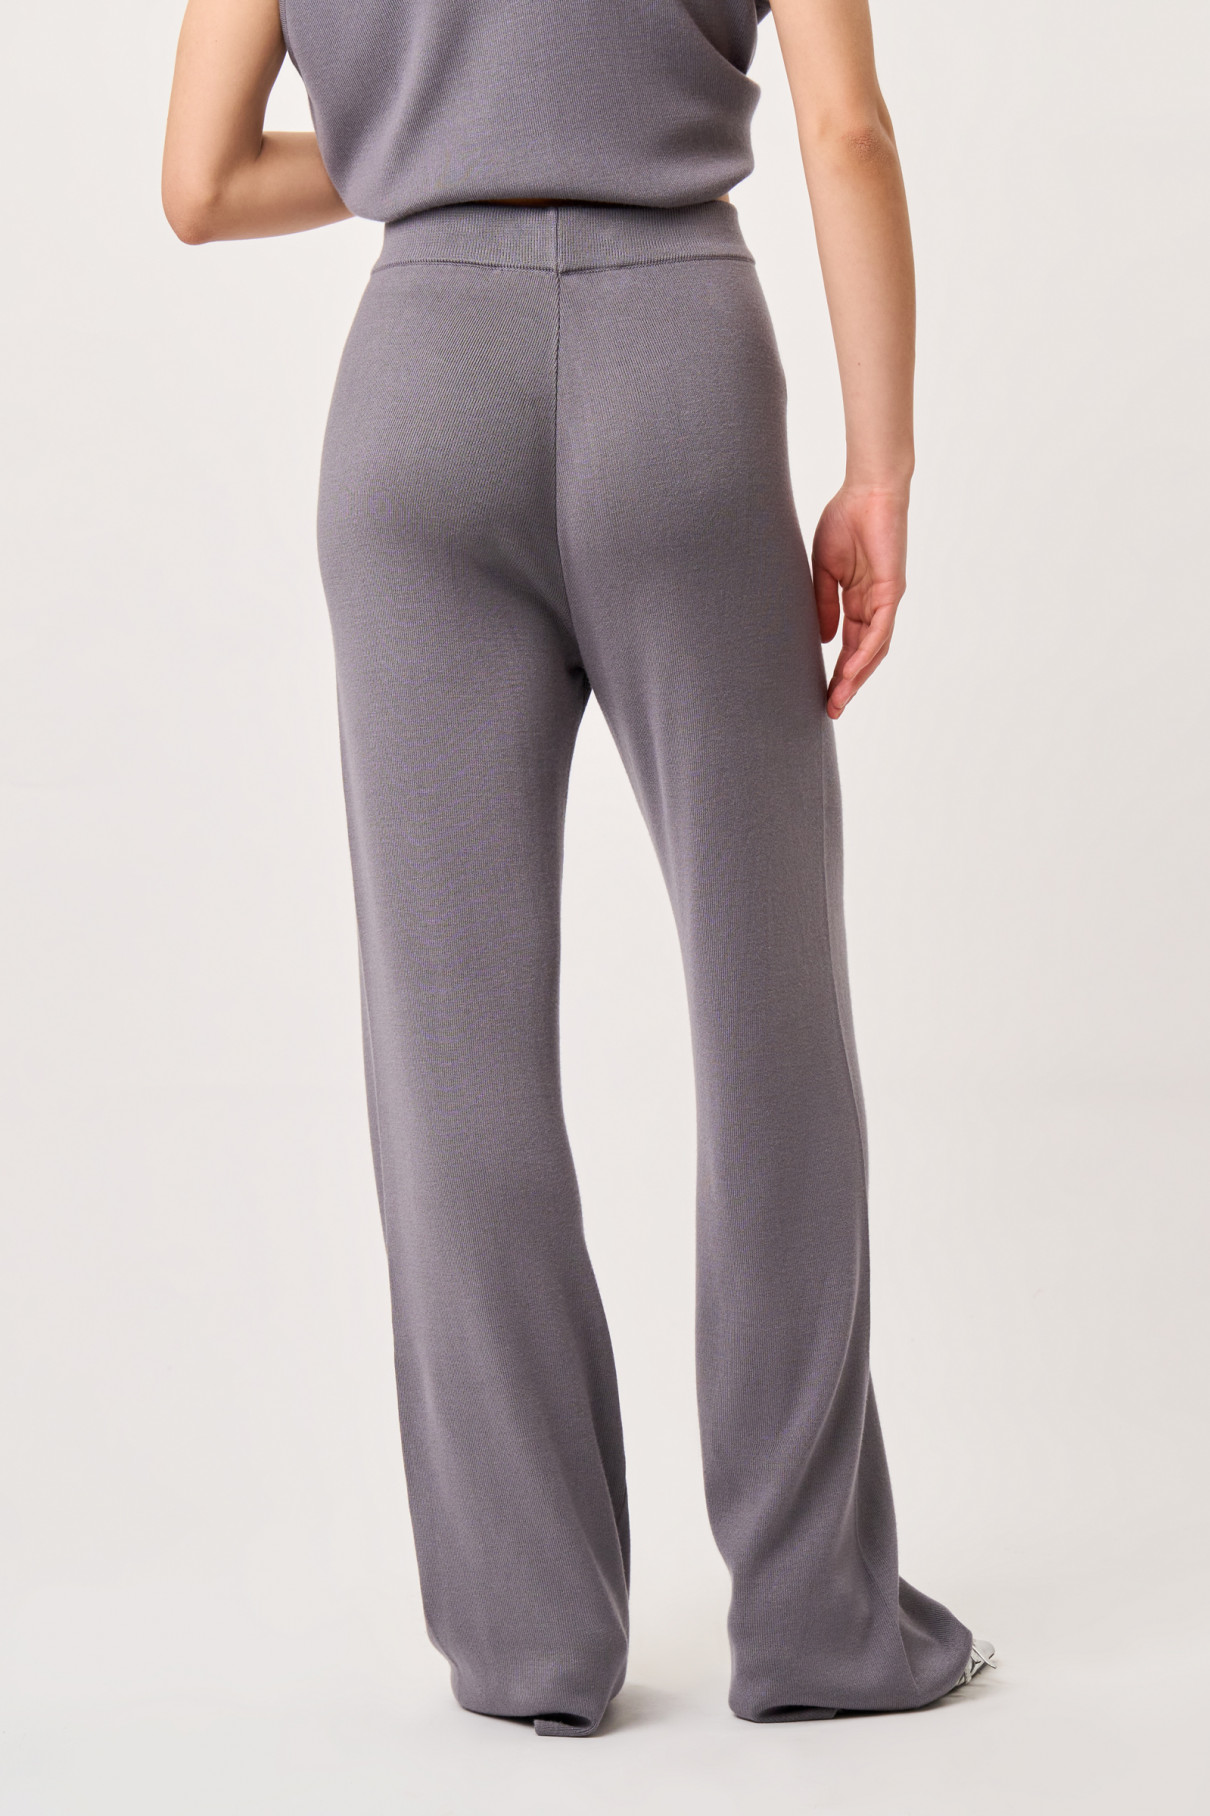 FR2204GRSPCO Трикотажные брюки прямого кроя, серый , арт. FR2204GRSPCO купить в интернет-магазине